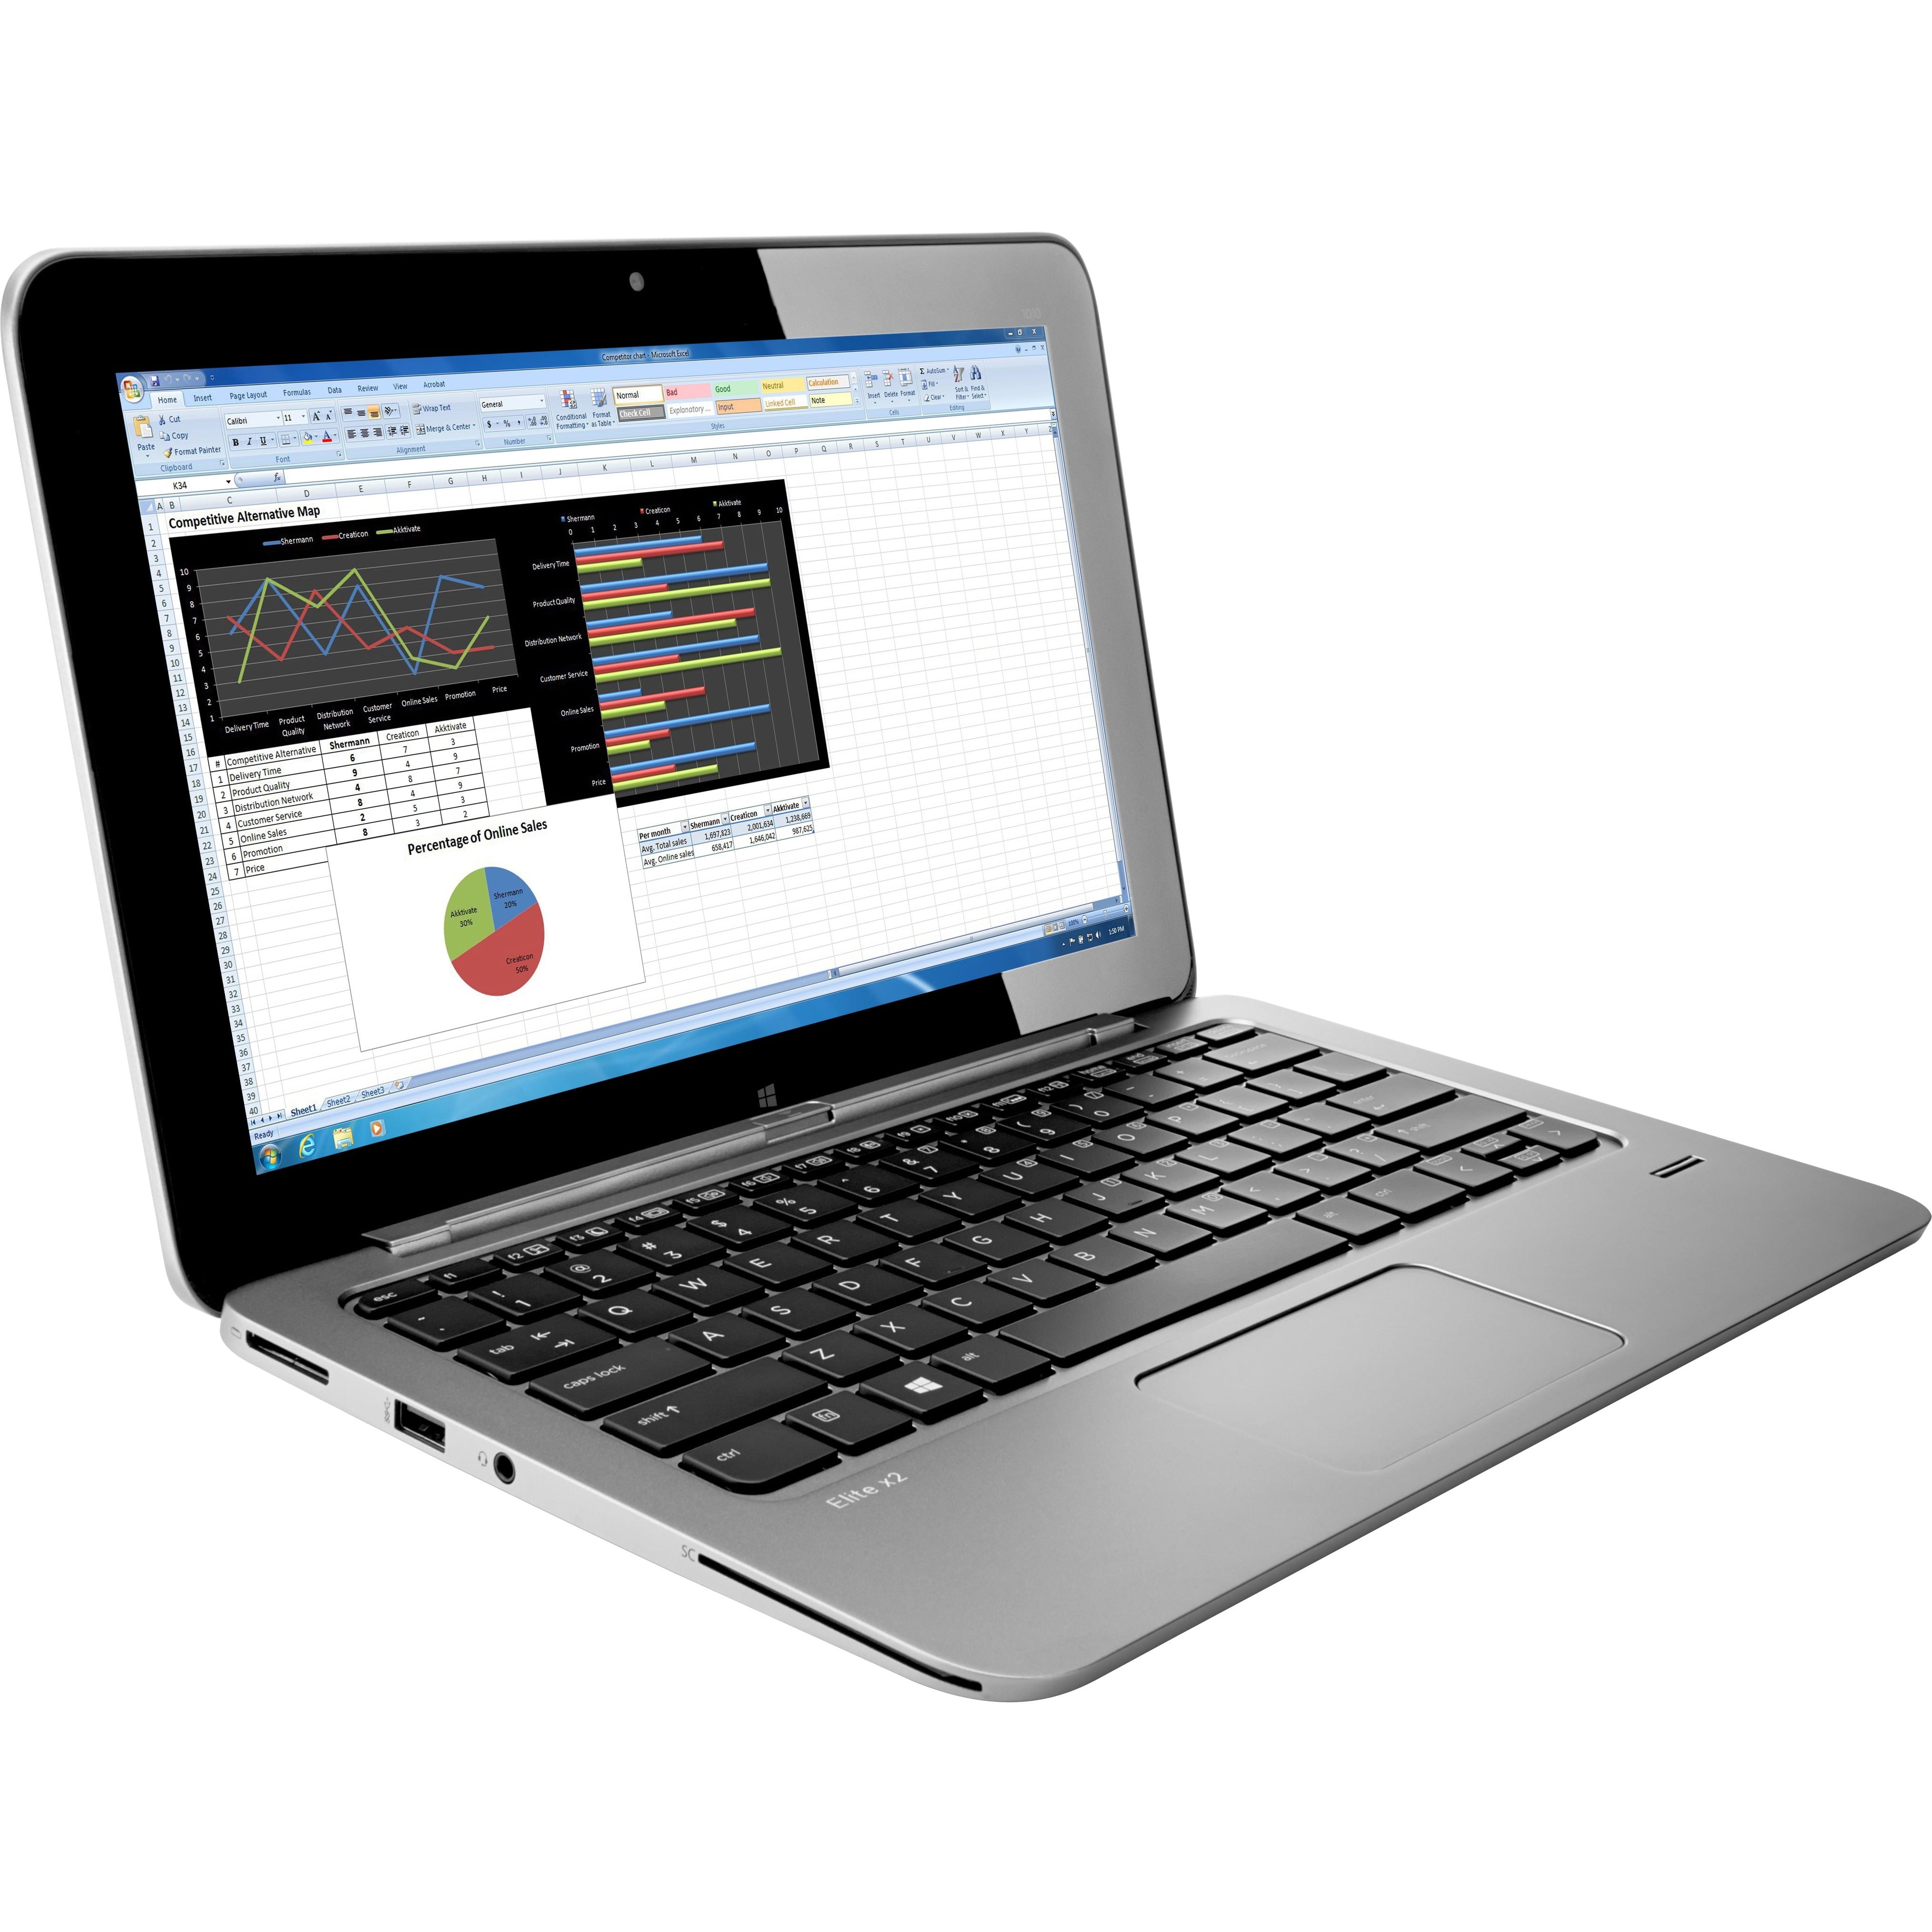 HP Elite x2 11.6" Full HD Touchscreen 2-in-1 Laptop, Intel Core M 5Y10c, 4GB RAM, 128GB SSD